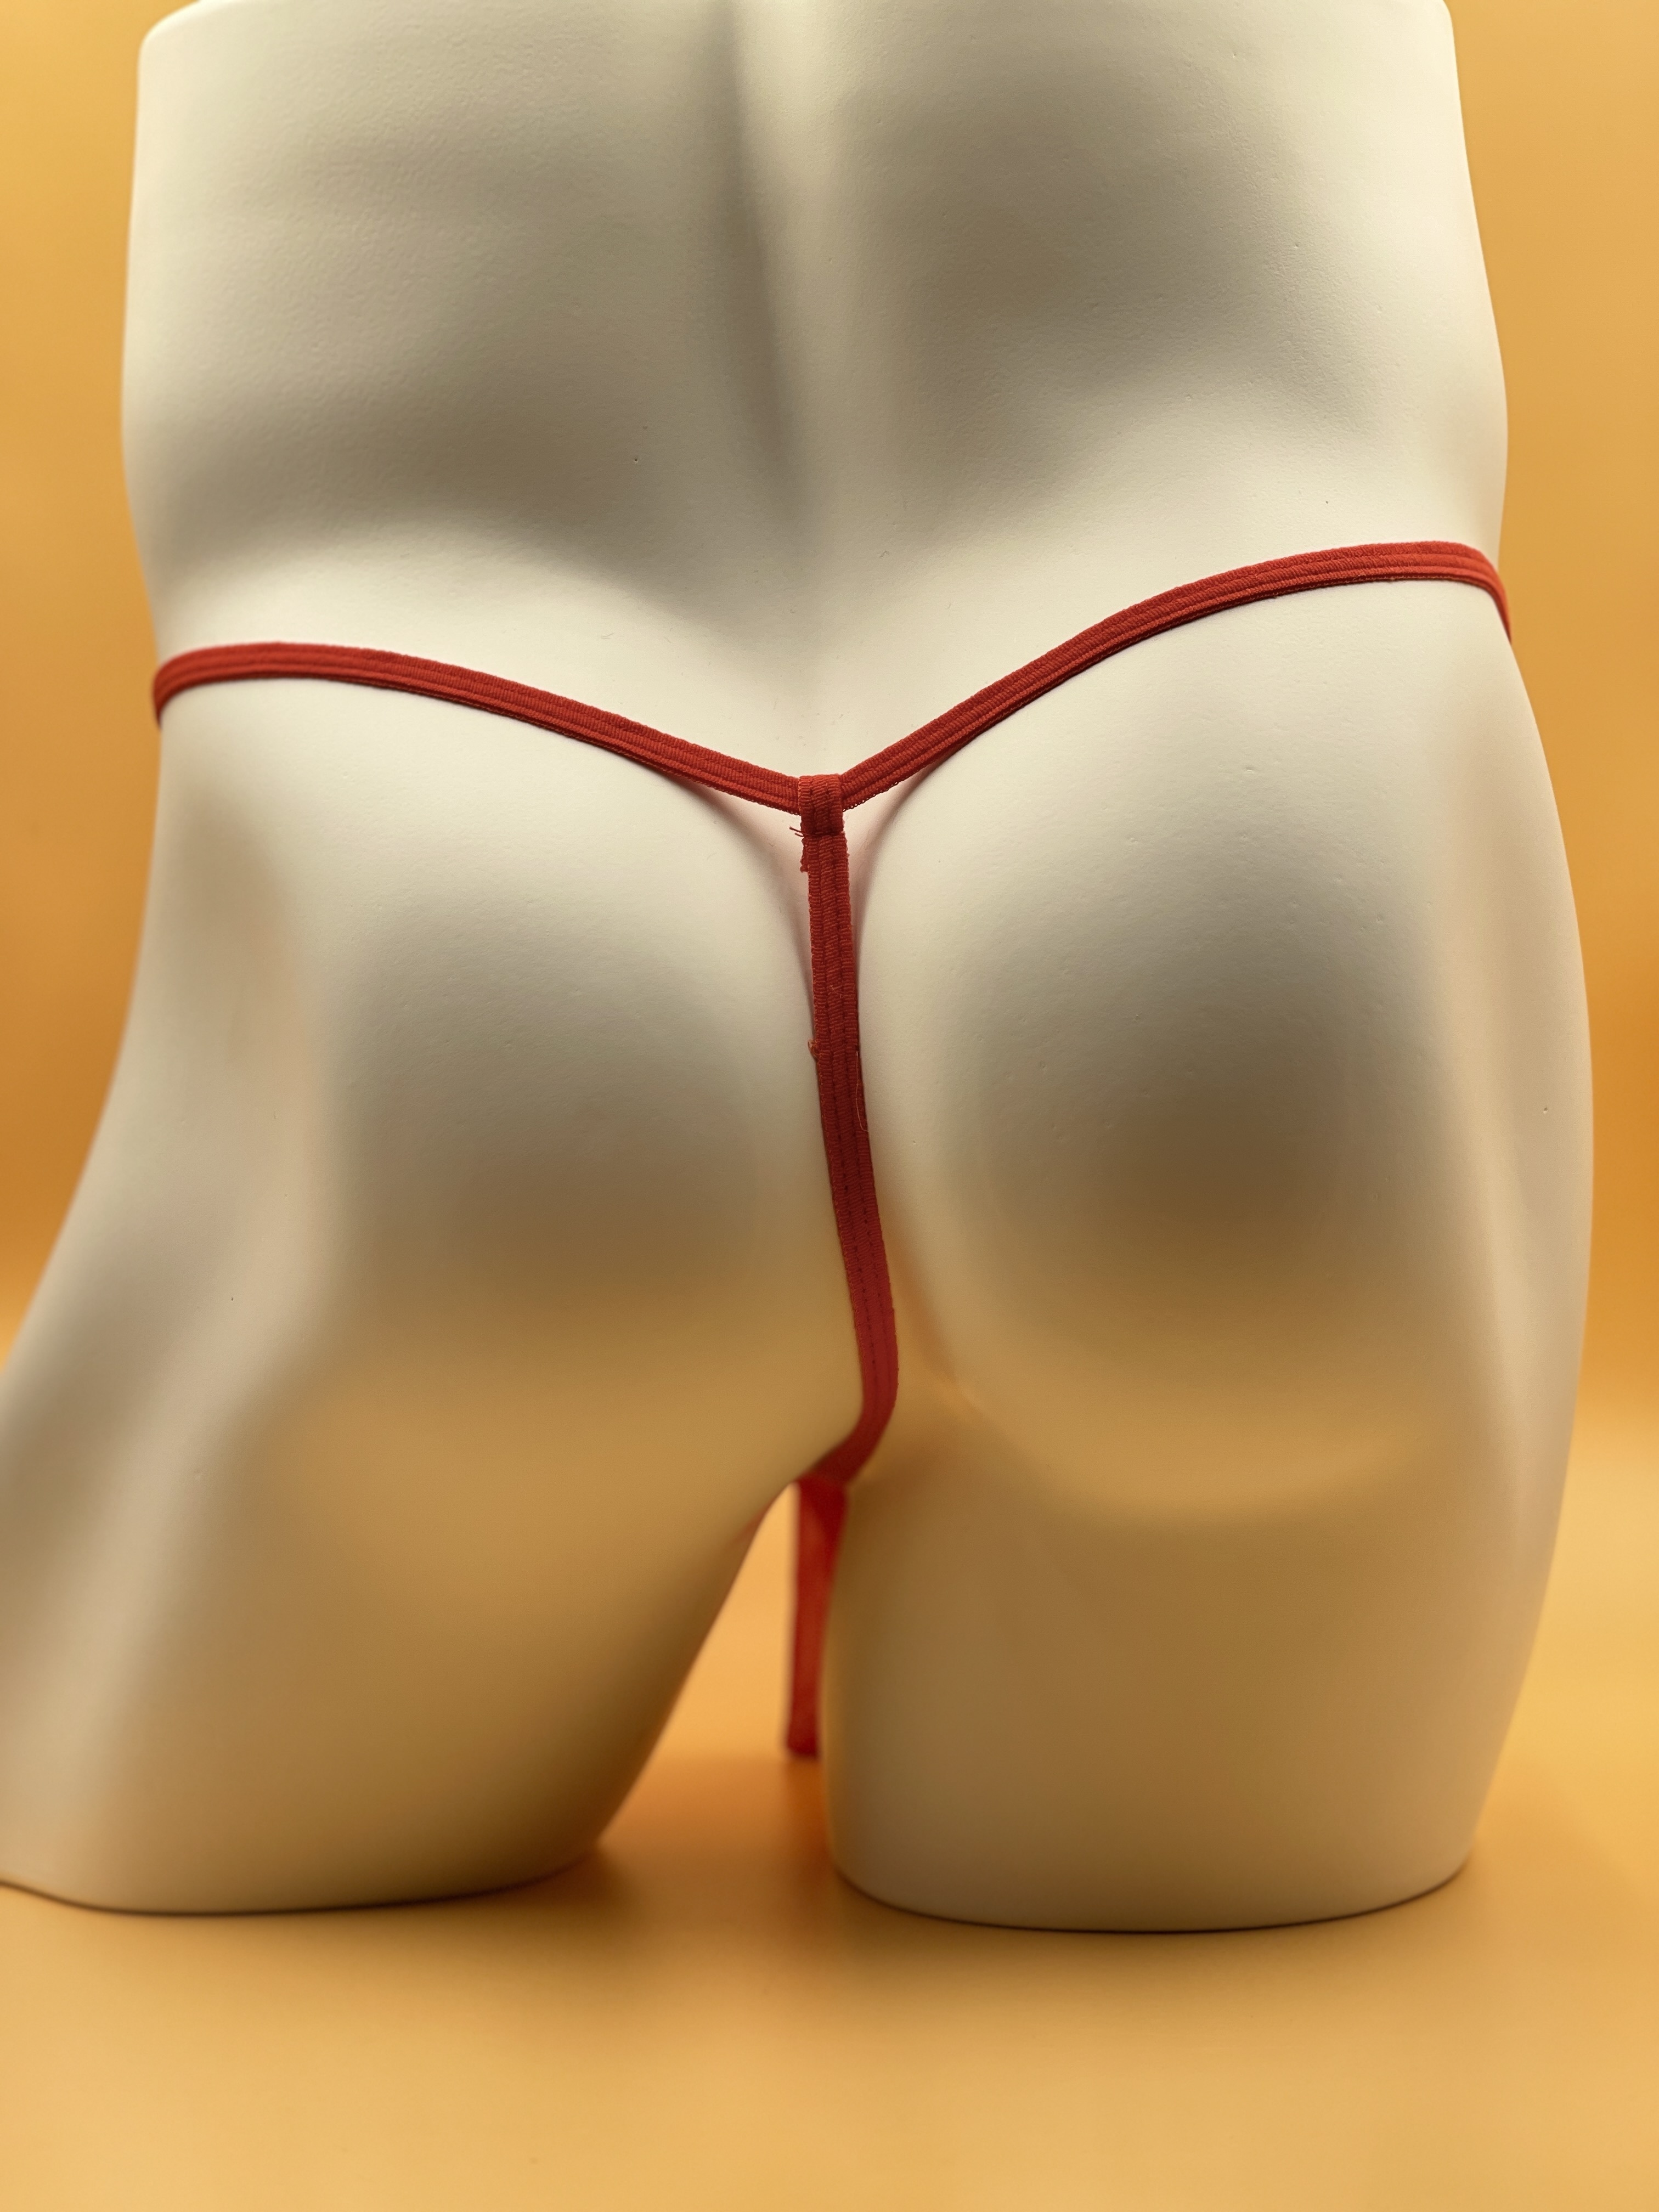 Men Novelty Elephant G-strings Thongs Panties Underwear Briefs